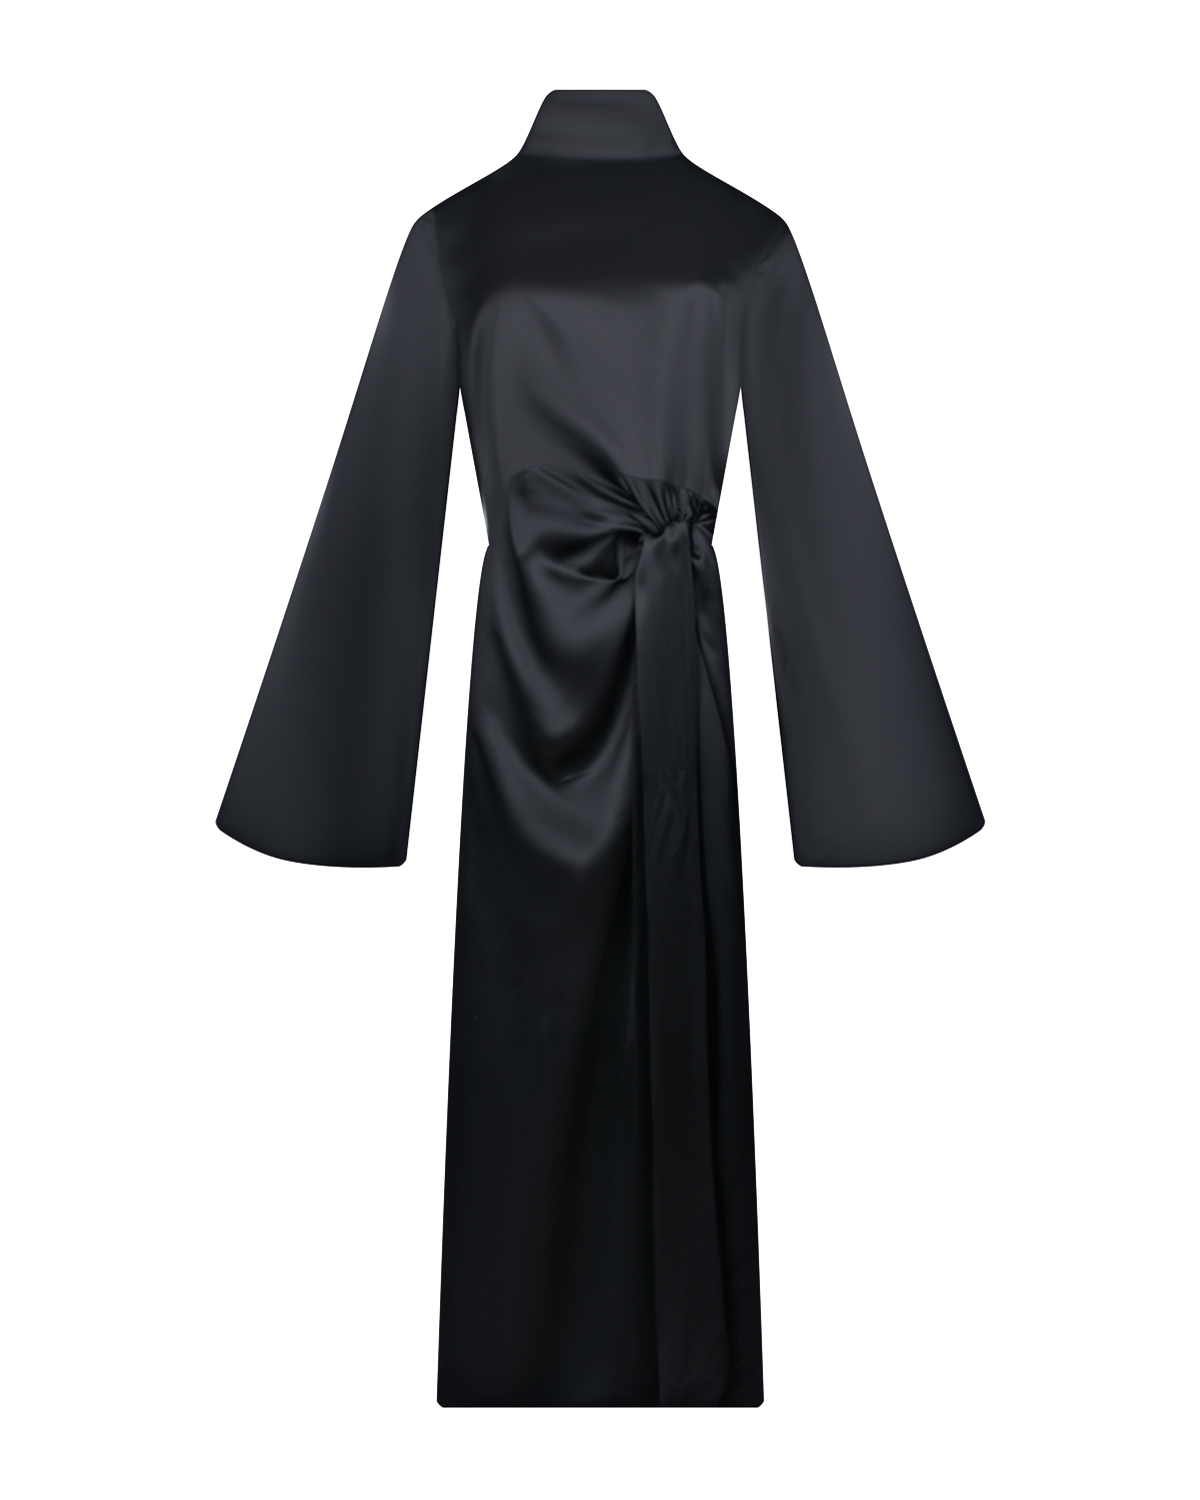 Черное платье с длинными расклешенными рукавами ROHE, размер 44, цвет черный - фото 1